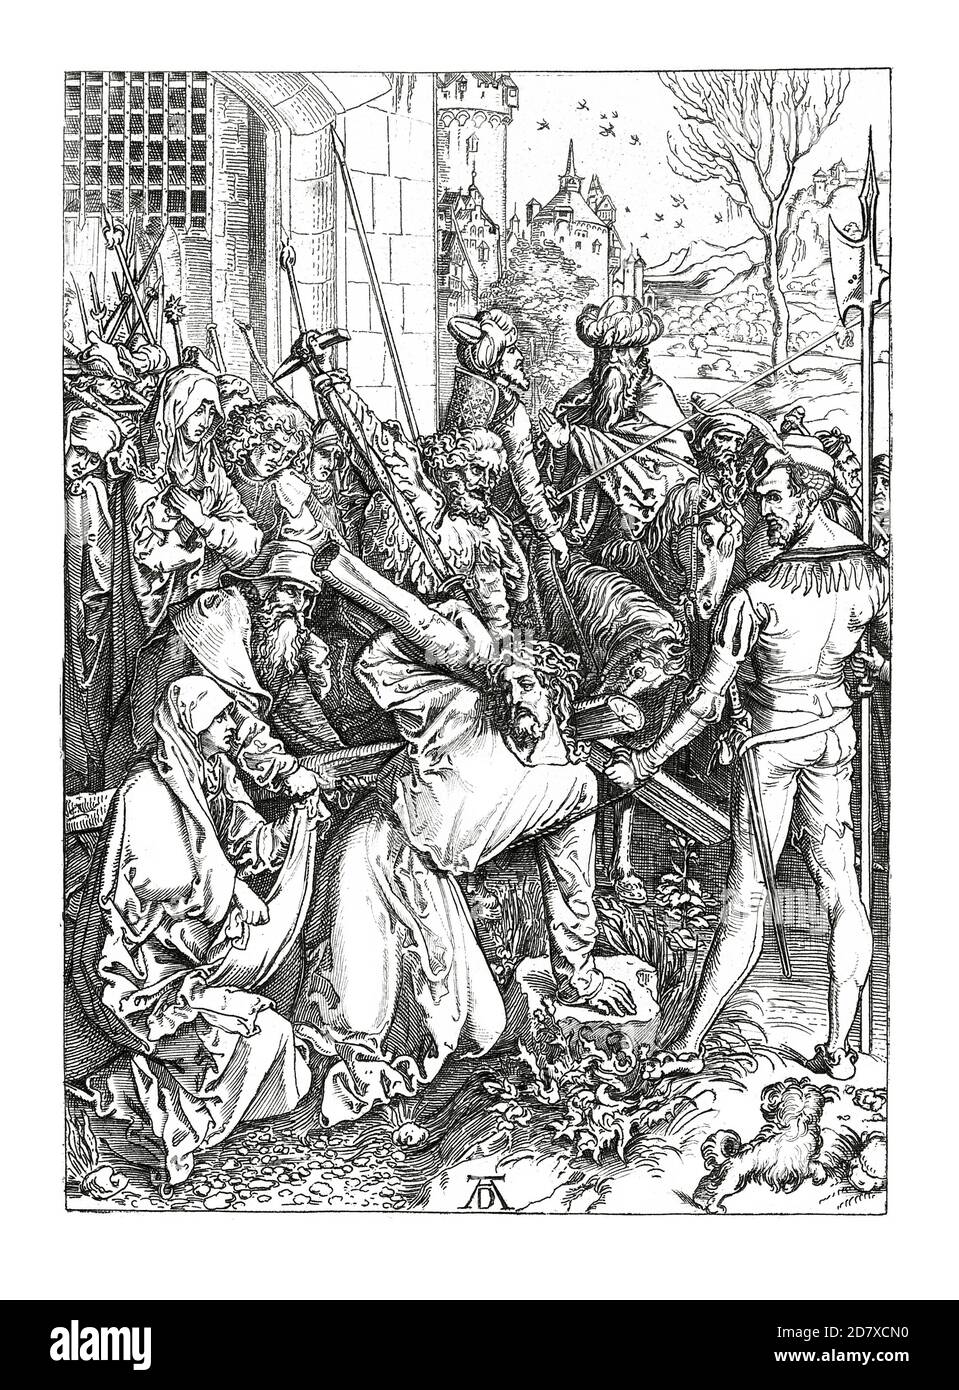 Abbildung des Kreuztragenden Christus aus dem 19. Jahrhundert, Gemälde von Albrecht Durer (datiert 1498). Stich veröffentlicht in Systematischer Bilder bei Stockfoto